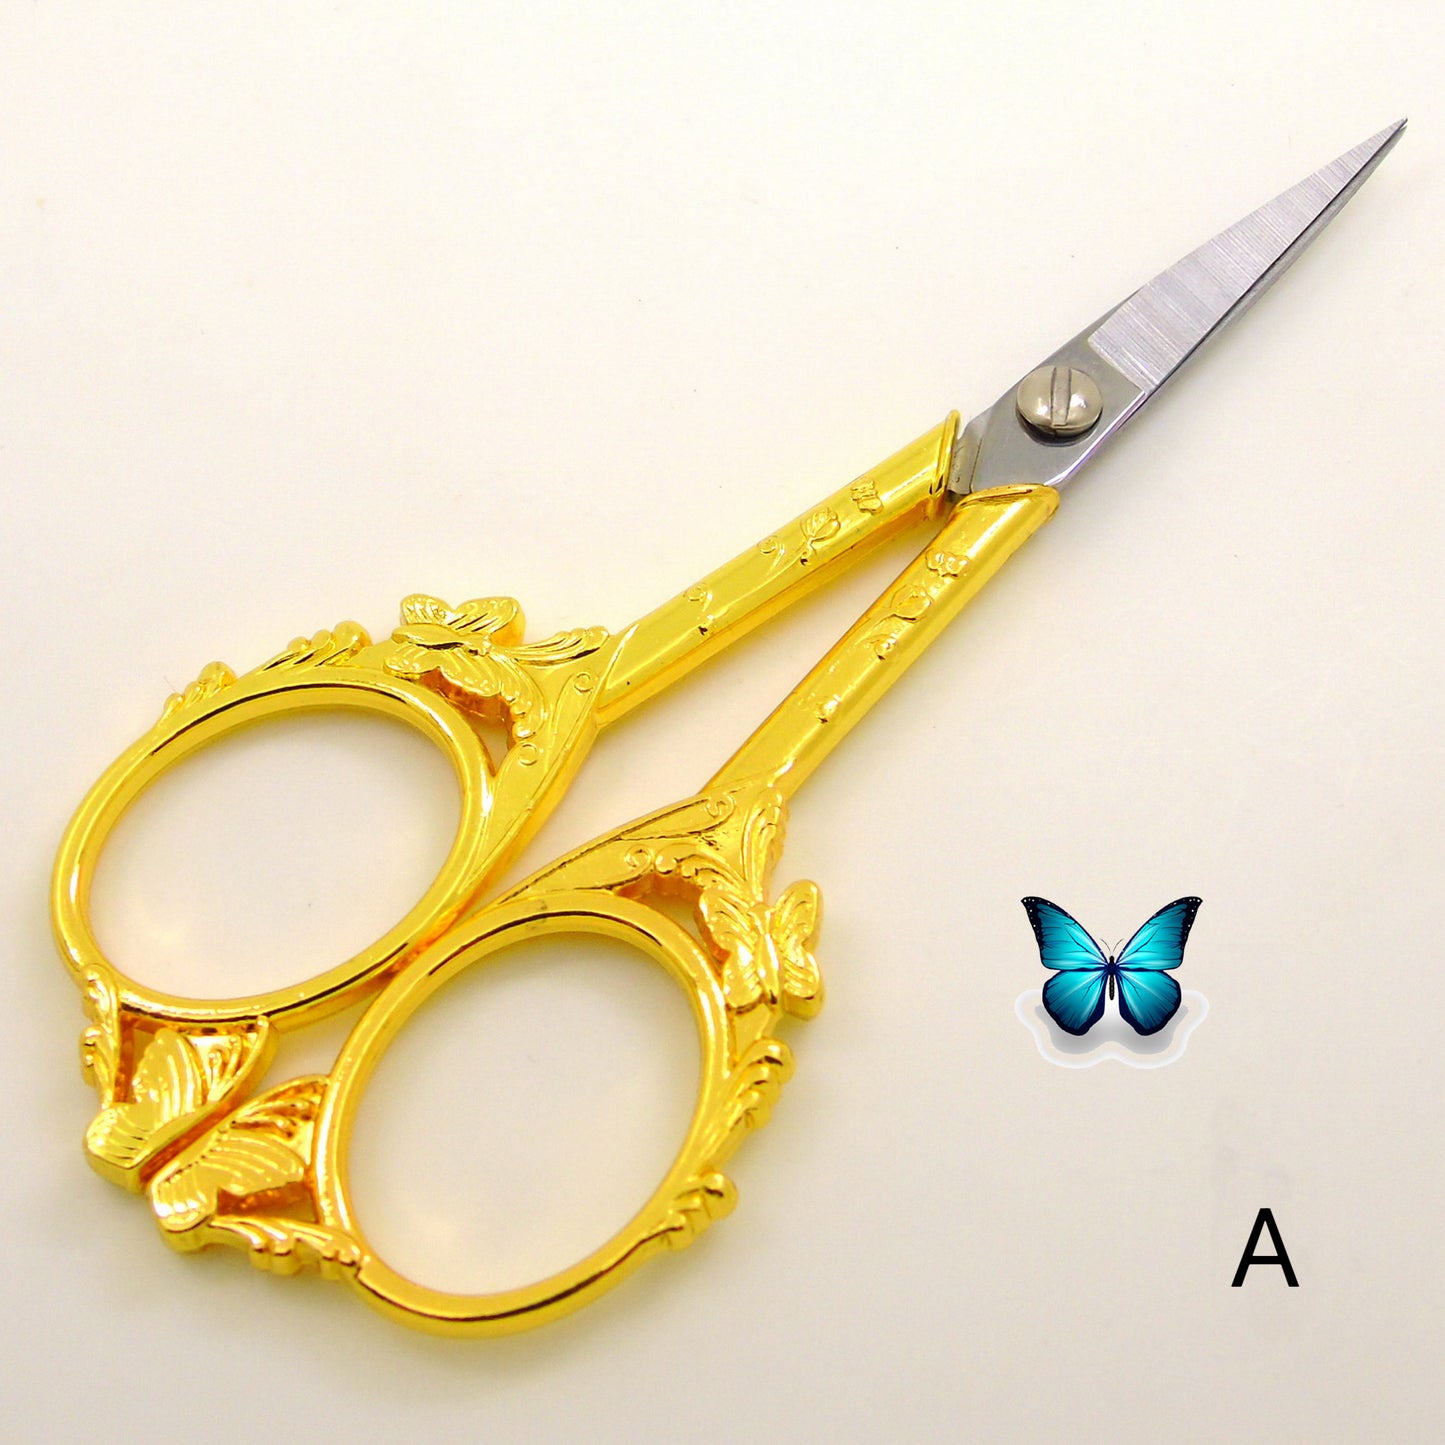 Butterfly Shape Stainless Steel Scissors